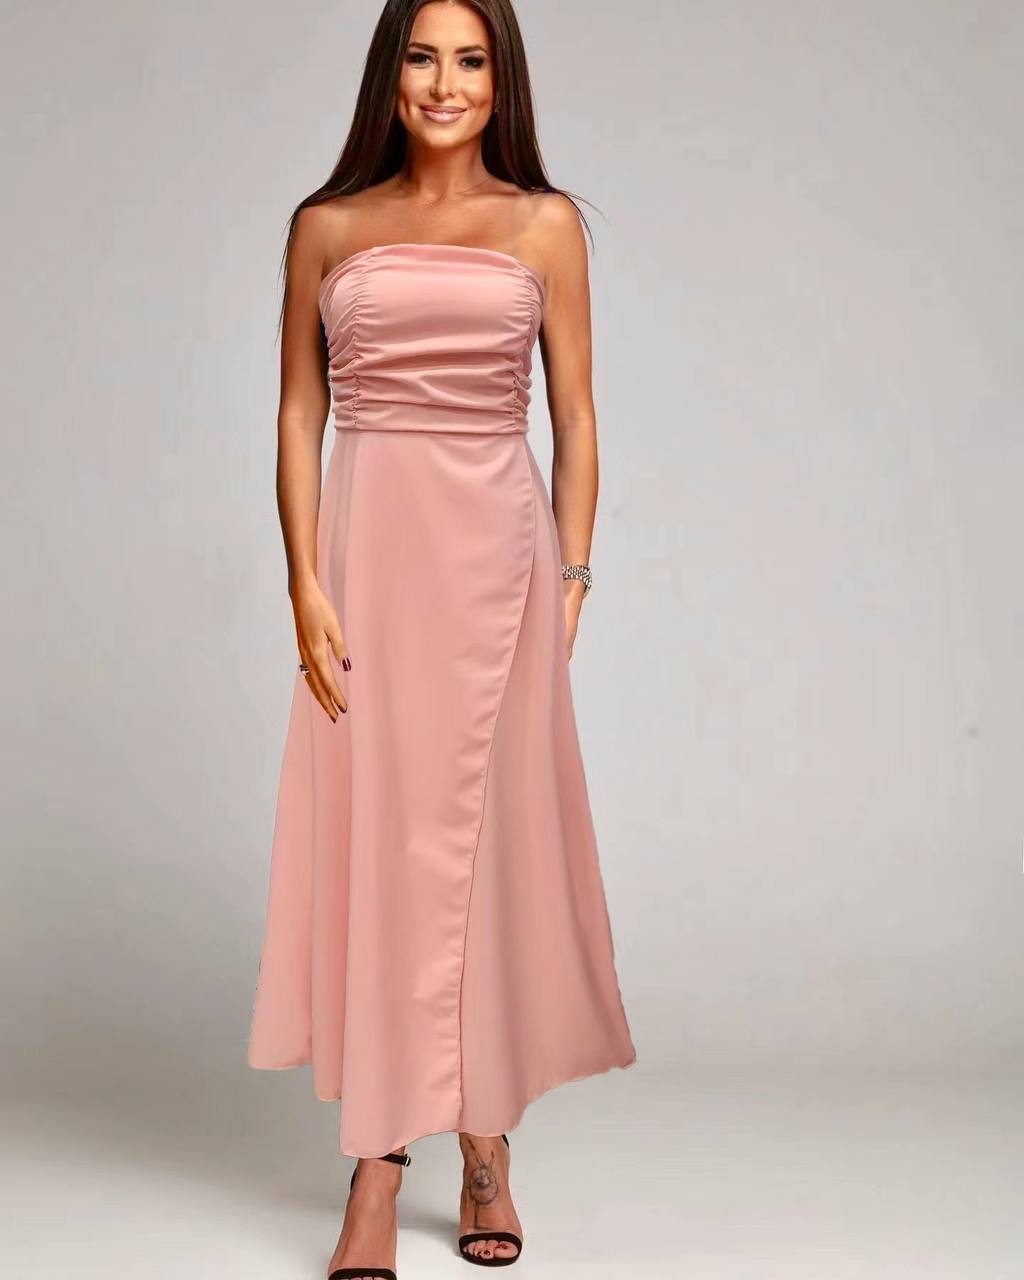 Γυναικείο στράπλες φόρεμα 84271 ροζ